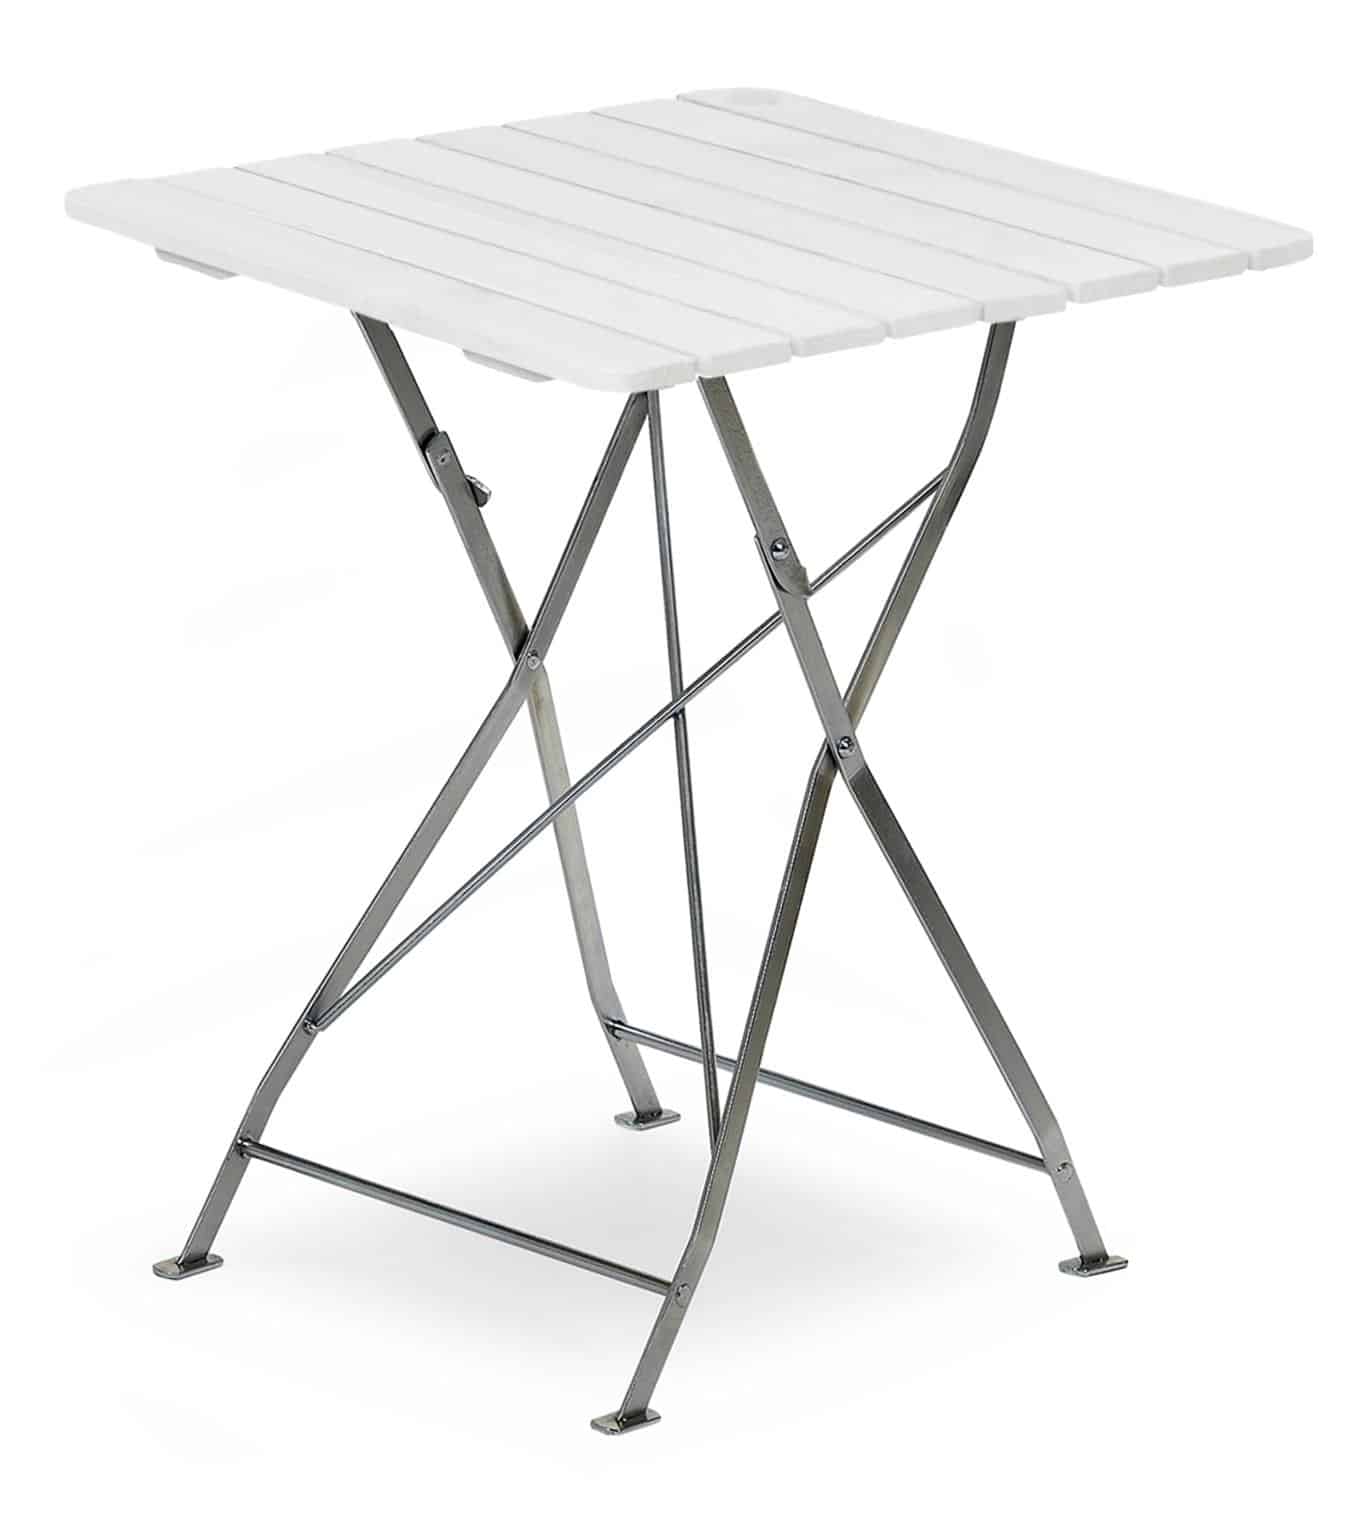 Hillerstorp Krögaren Bord 70X70 cm. Cafebord med stomme av förzinkat stål, bordsskiva i vitlaserat trä.